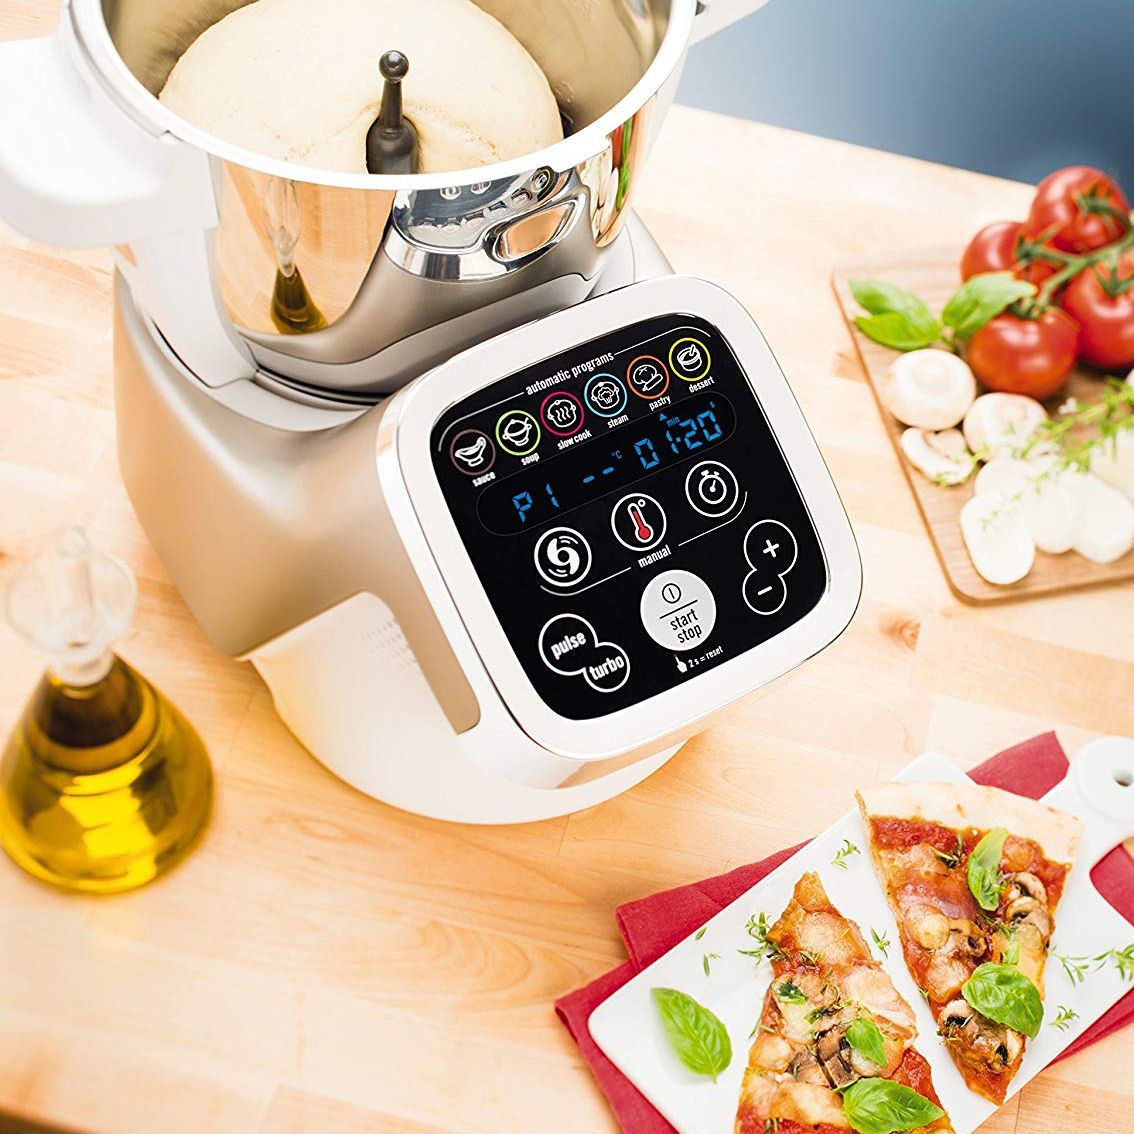 Moulinex Companion XL : test et avis du robot cuisine